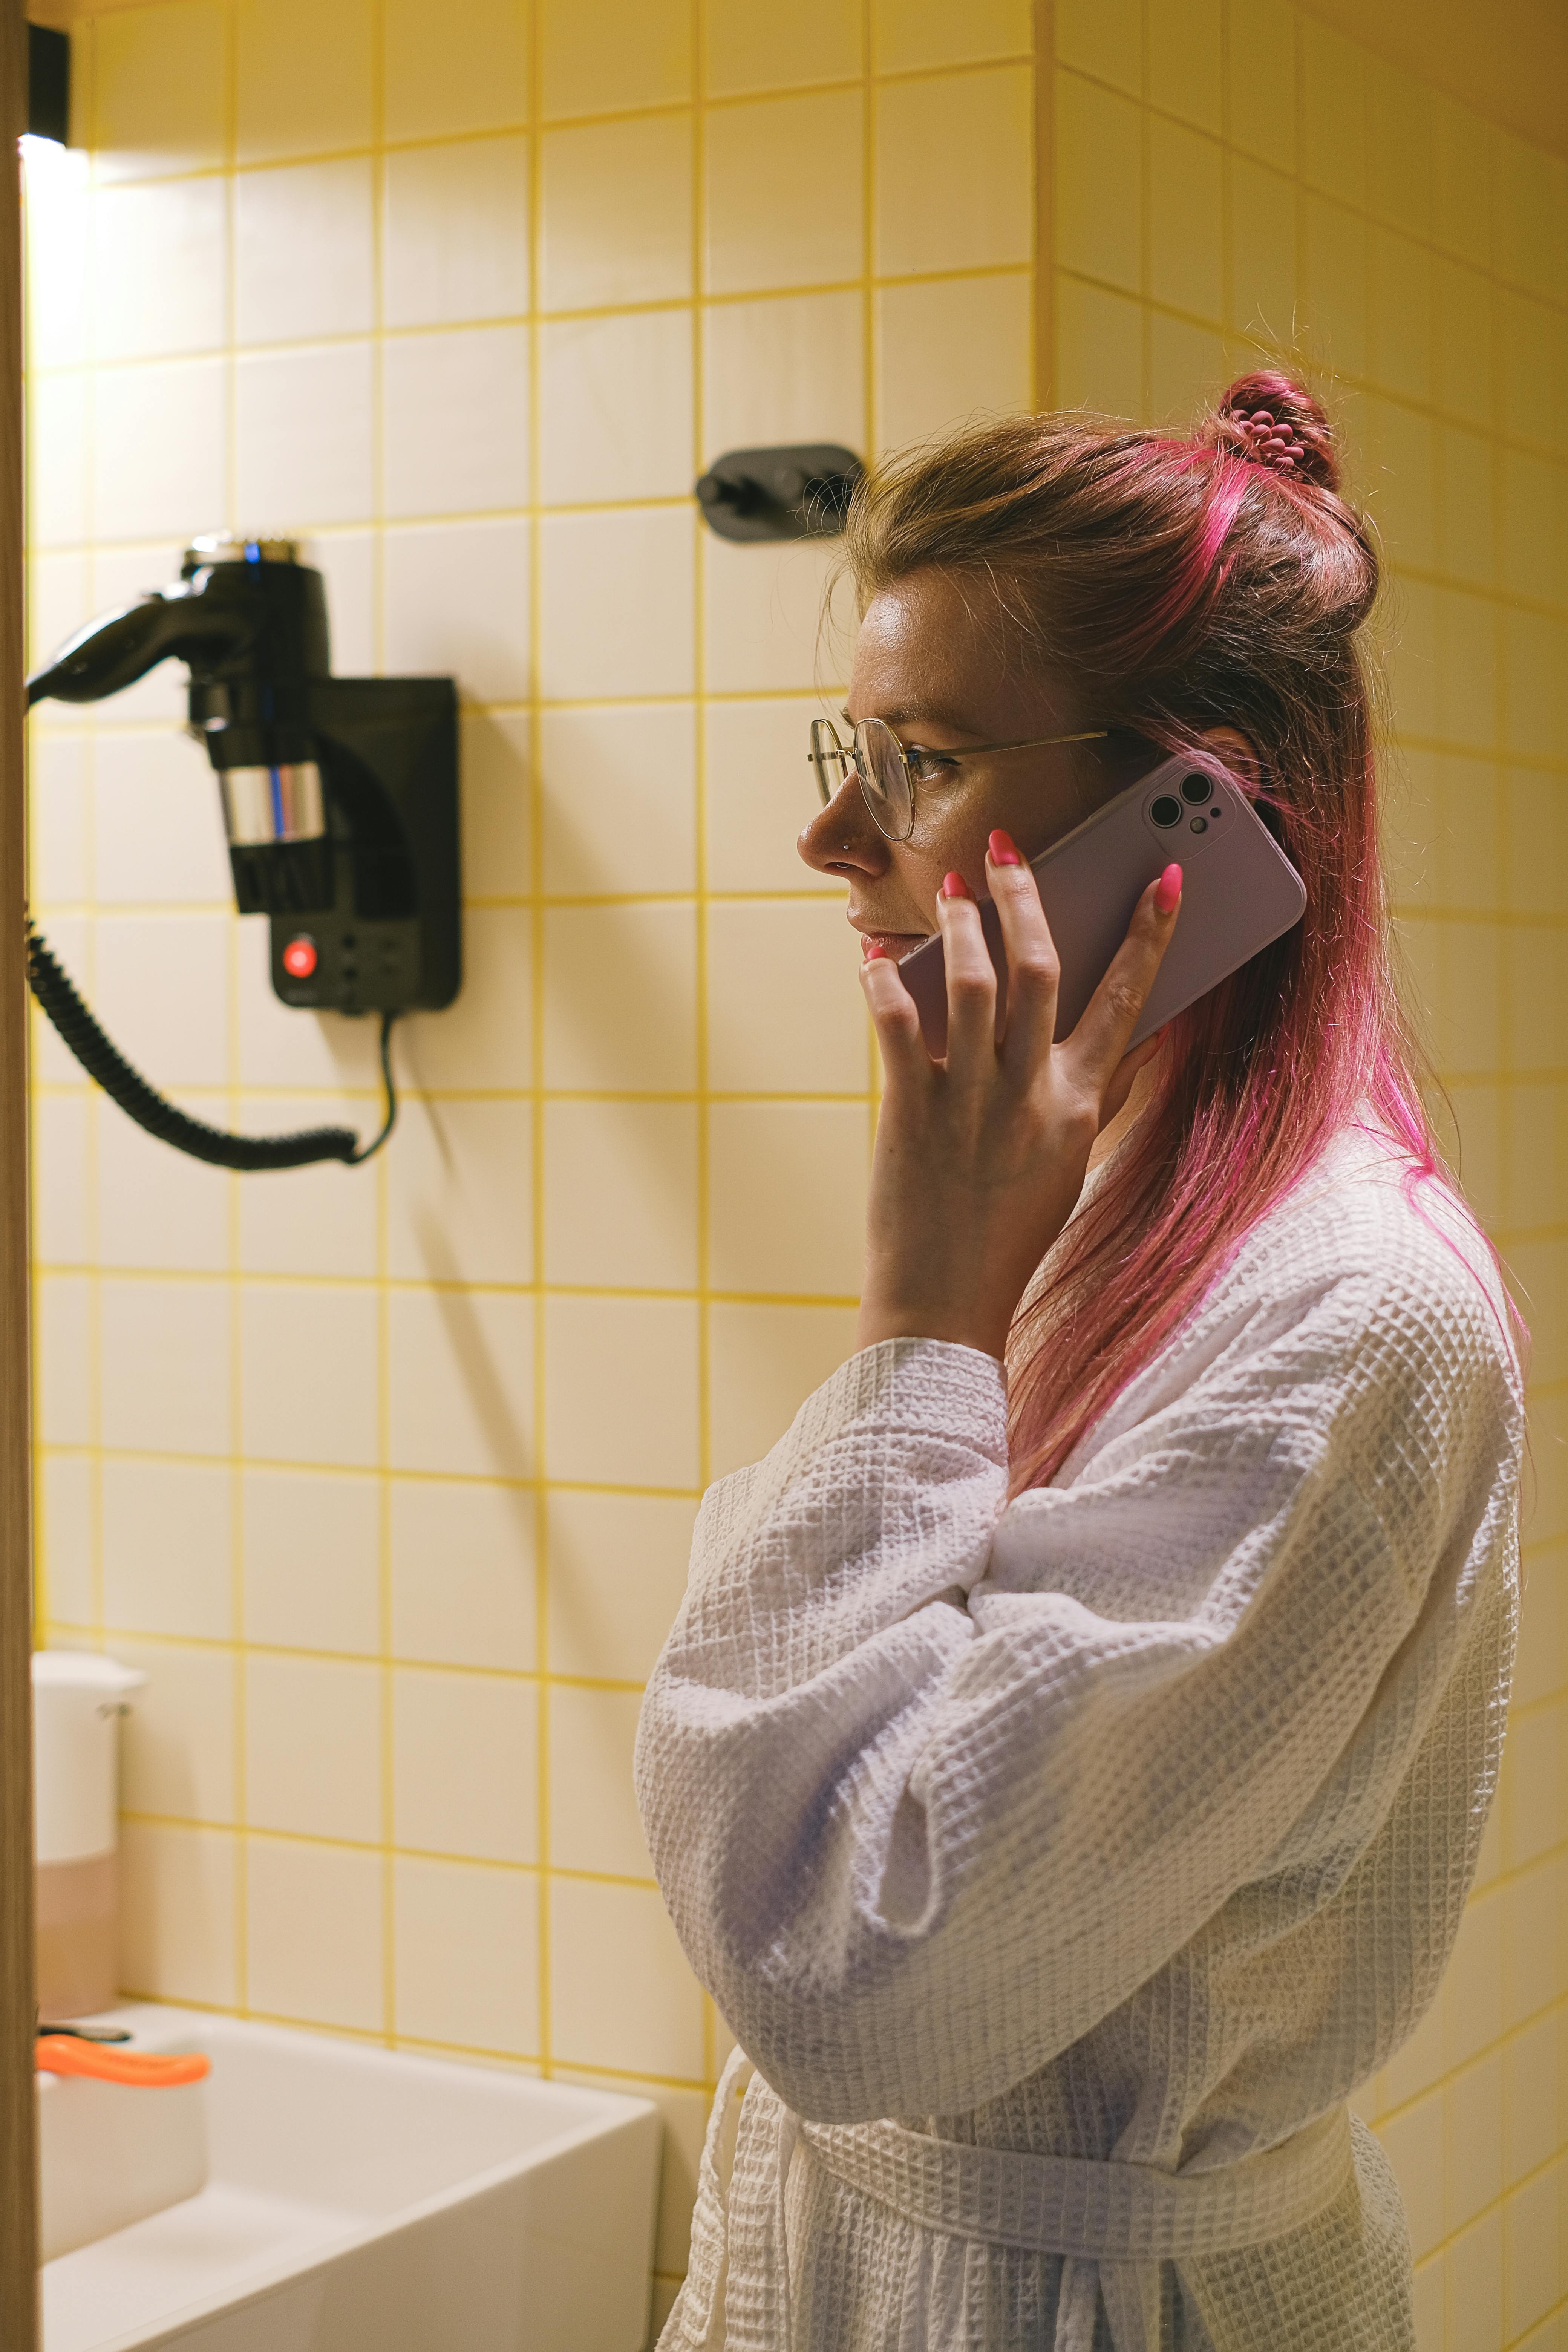 Une femme qui parle au téléphone dans une salle de bain | Source : Pexels